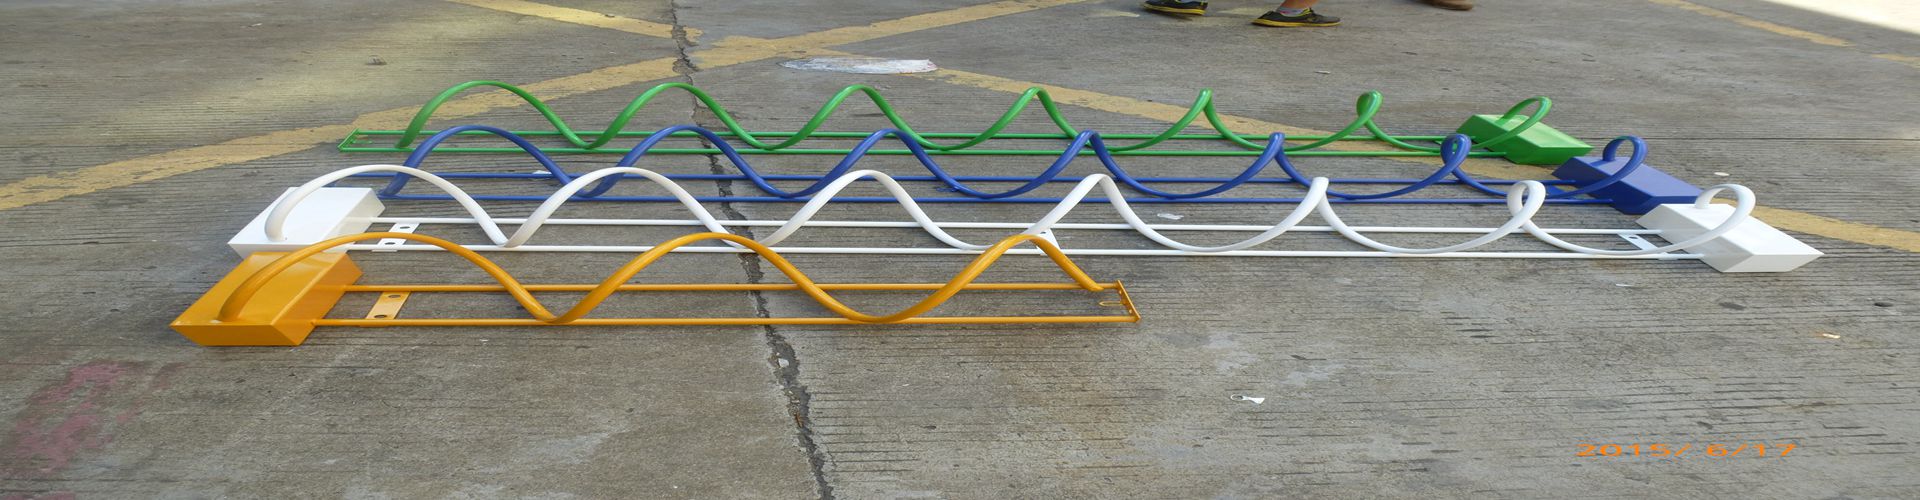 桂林螺旋式自行车停放架生产 地笼式自行车停放架